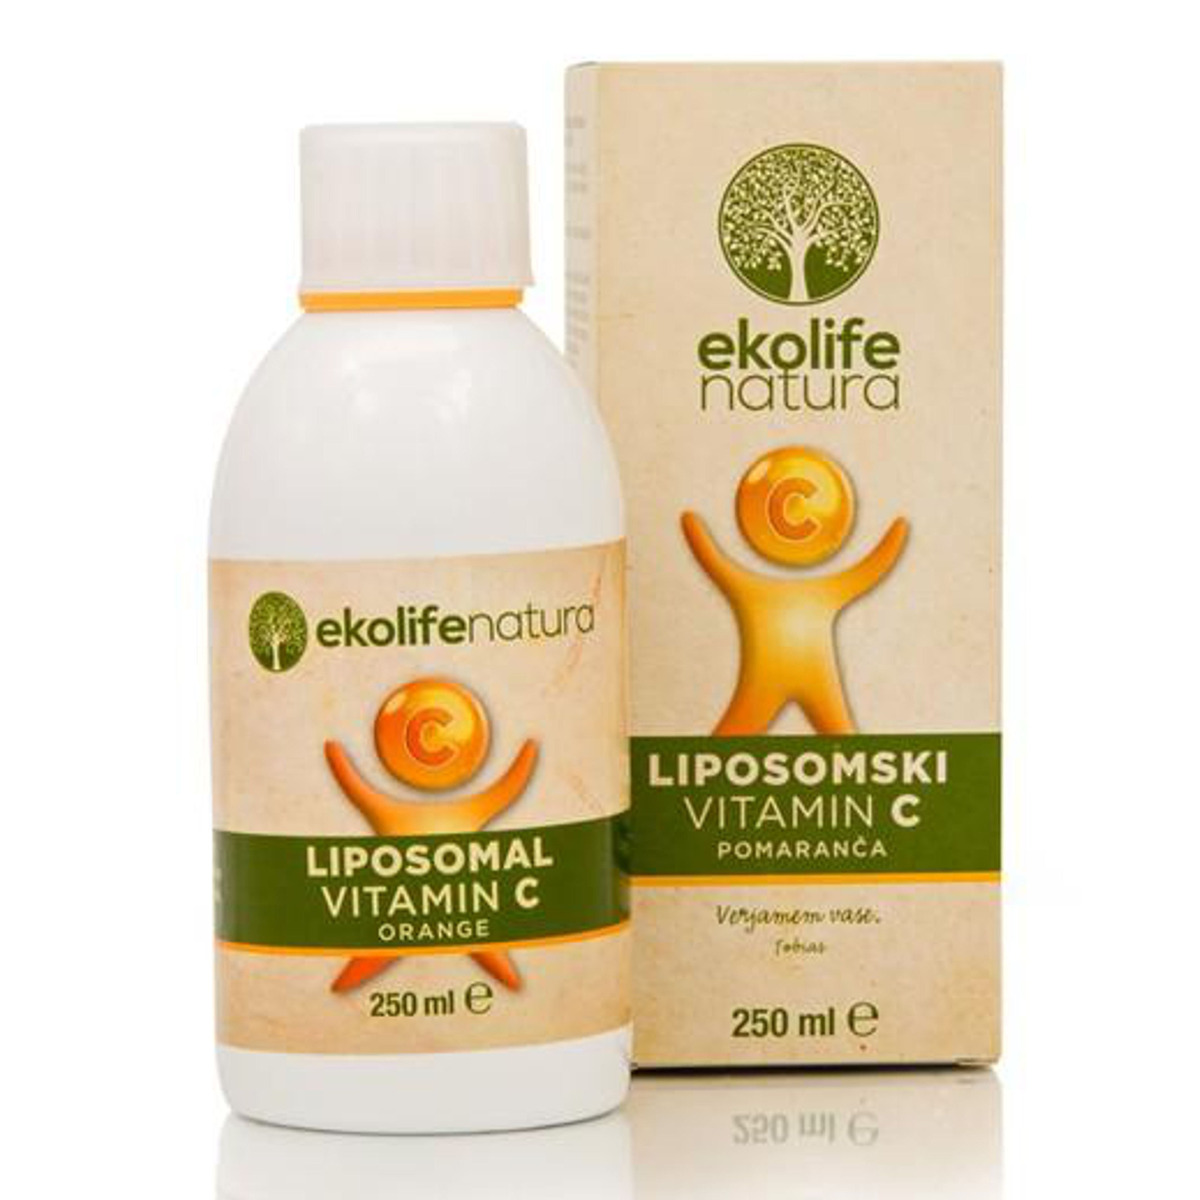 Ekolife Natura Liposomal Vitamin C 500 mg pomeranč 250 ml Ekolife Natura